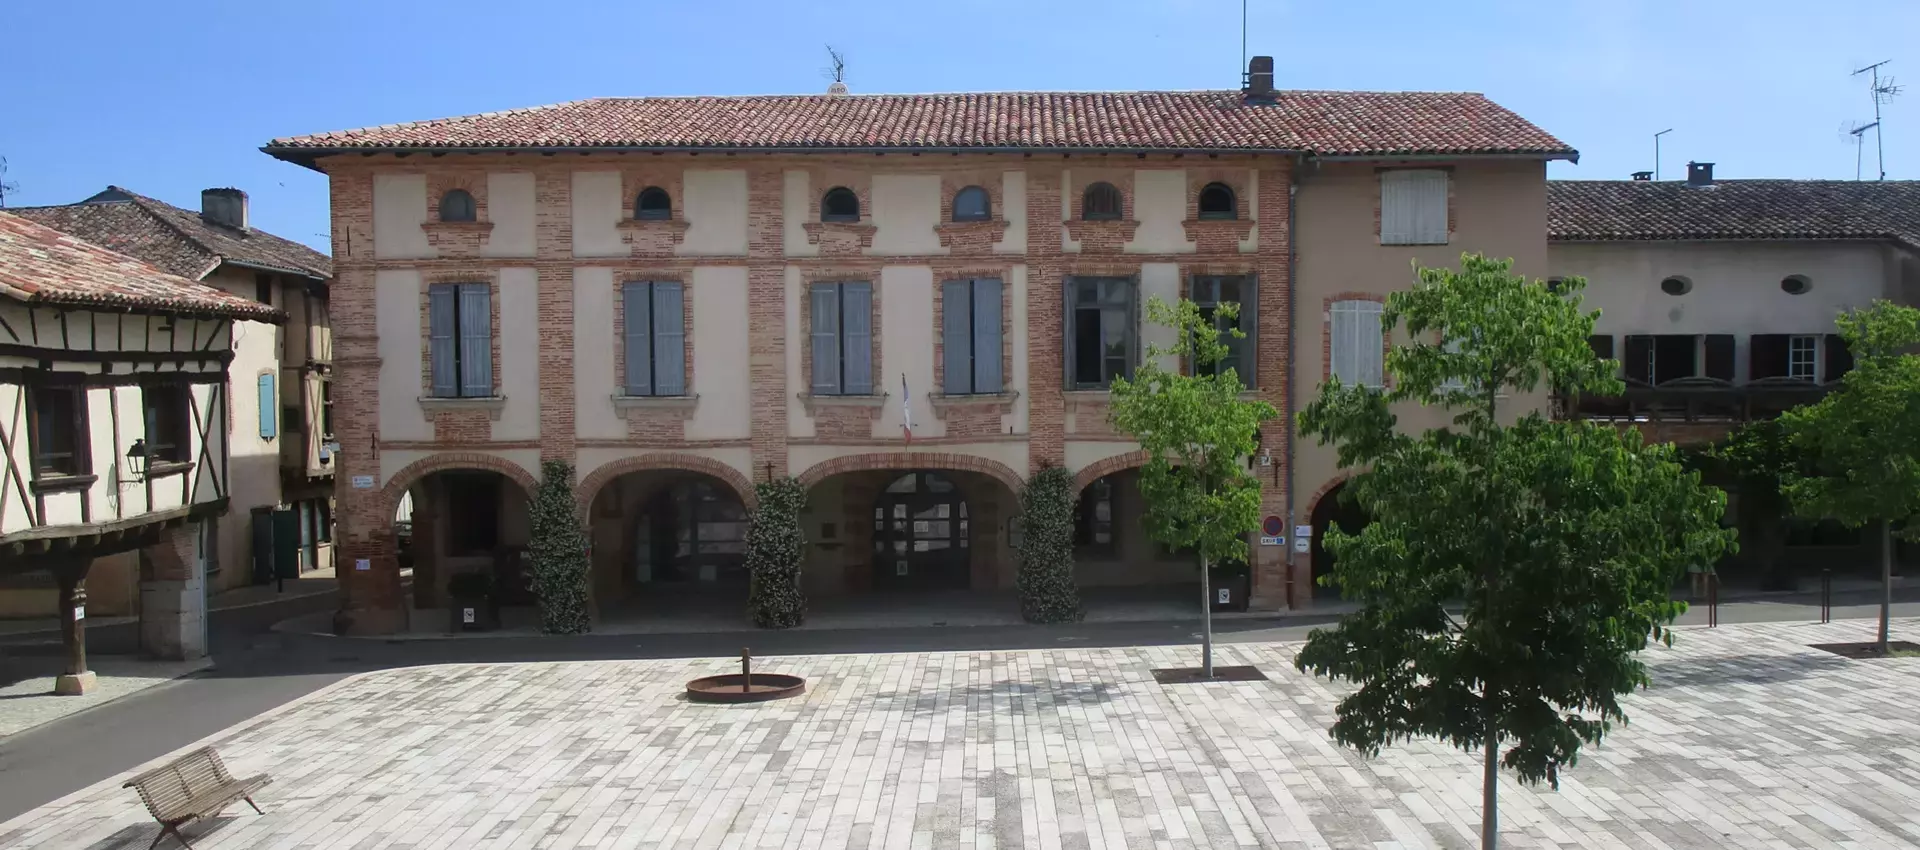 Les comptes-rendus du conseil municipal de Réalville (82) Tarn et Garonne